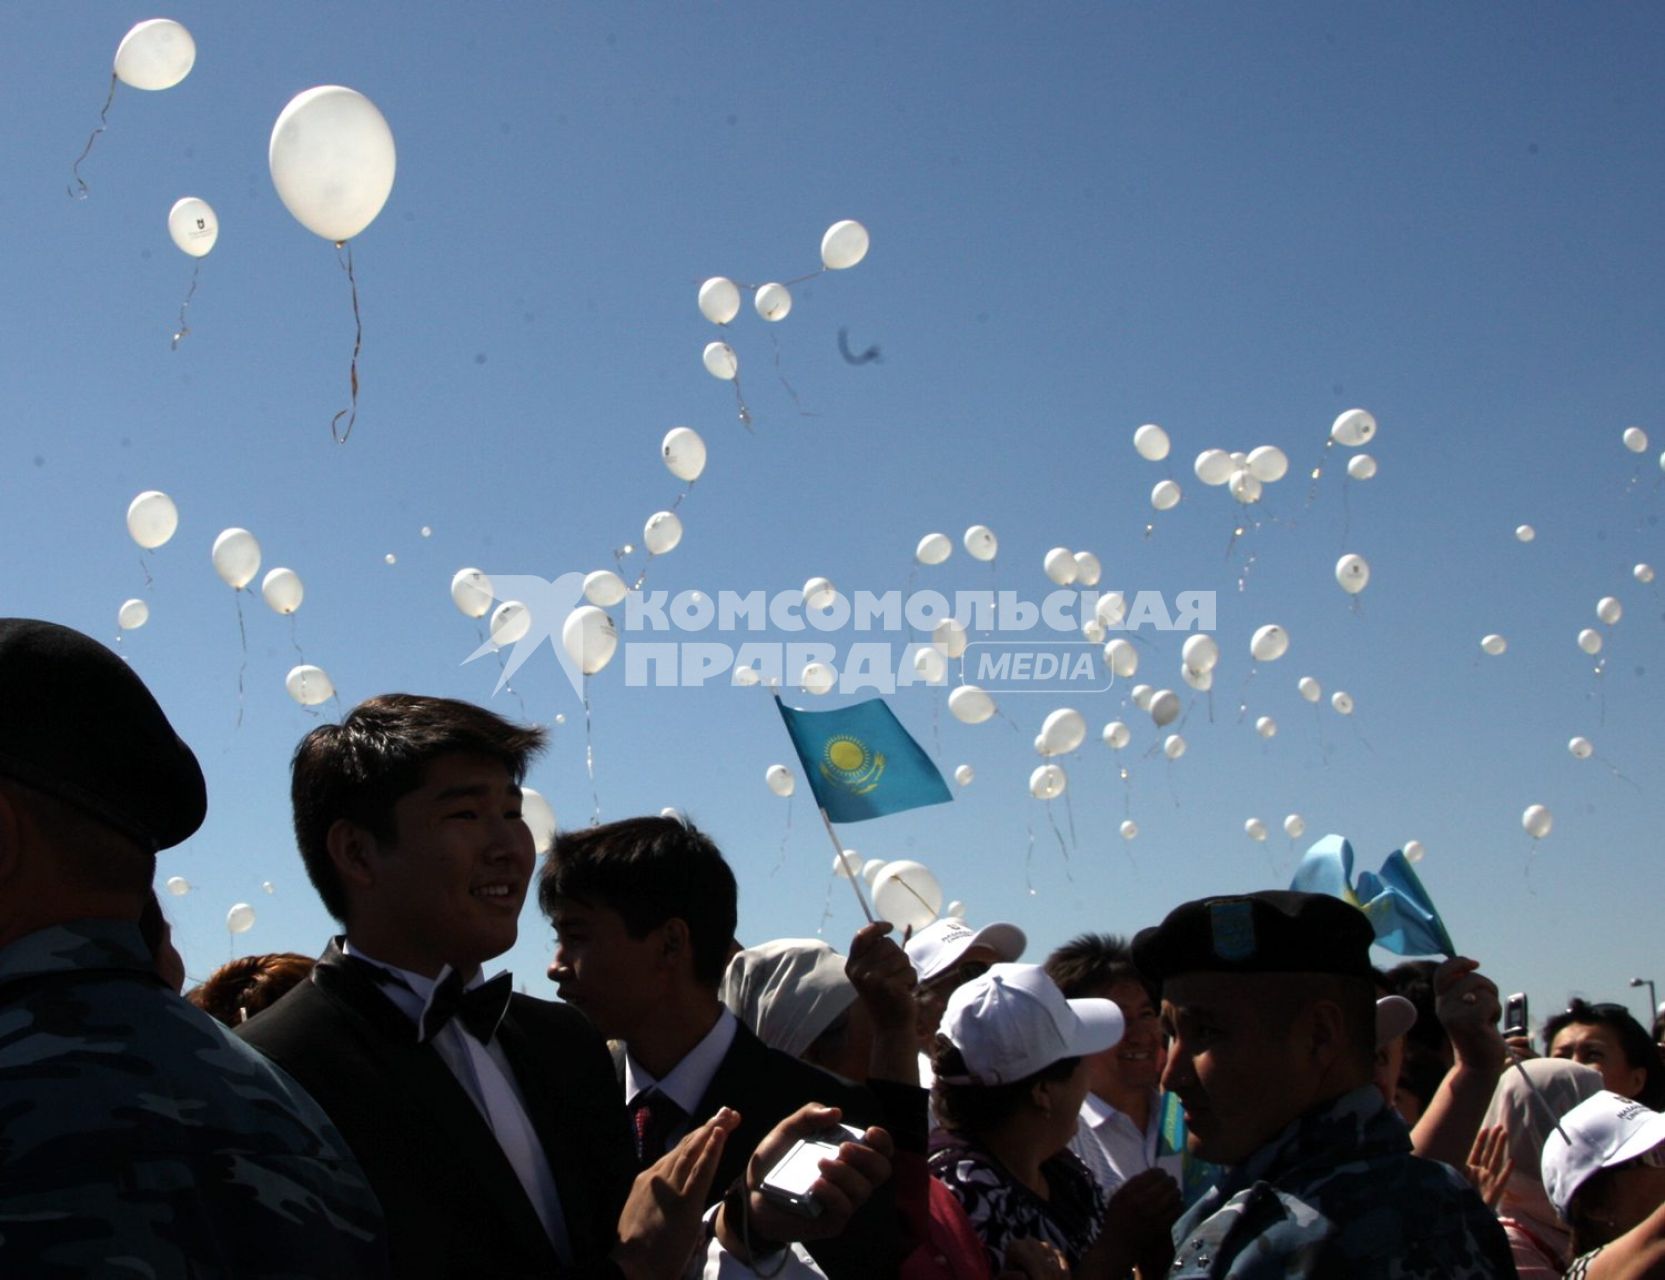 Астана. Церемония открытия первого в Казахстане университета международного уровня `Назарбаев Университет`.